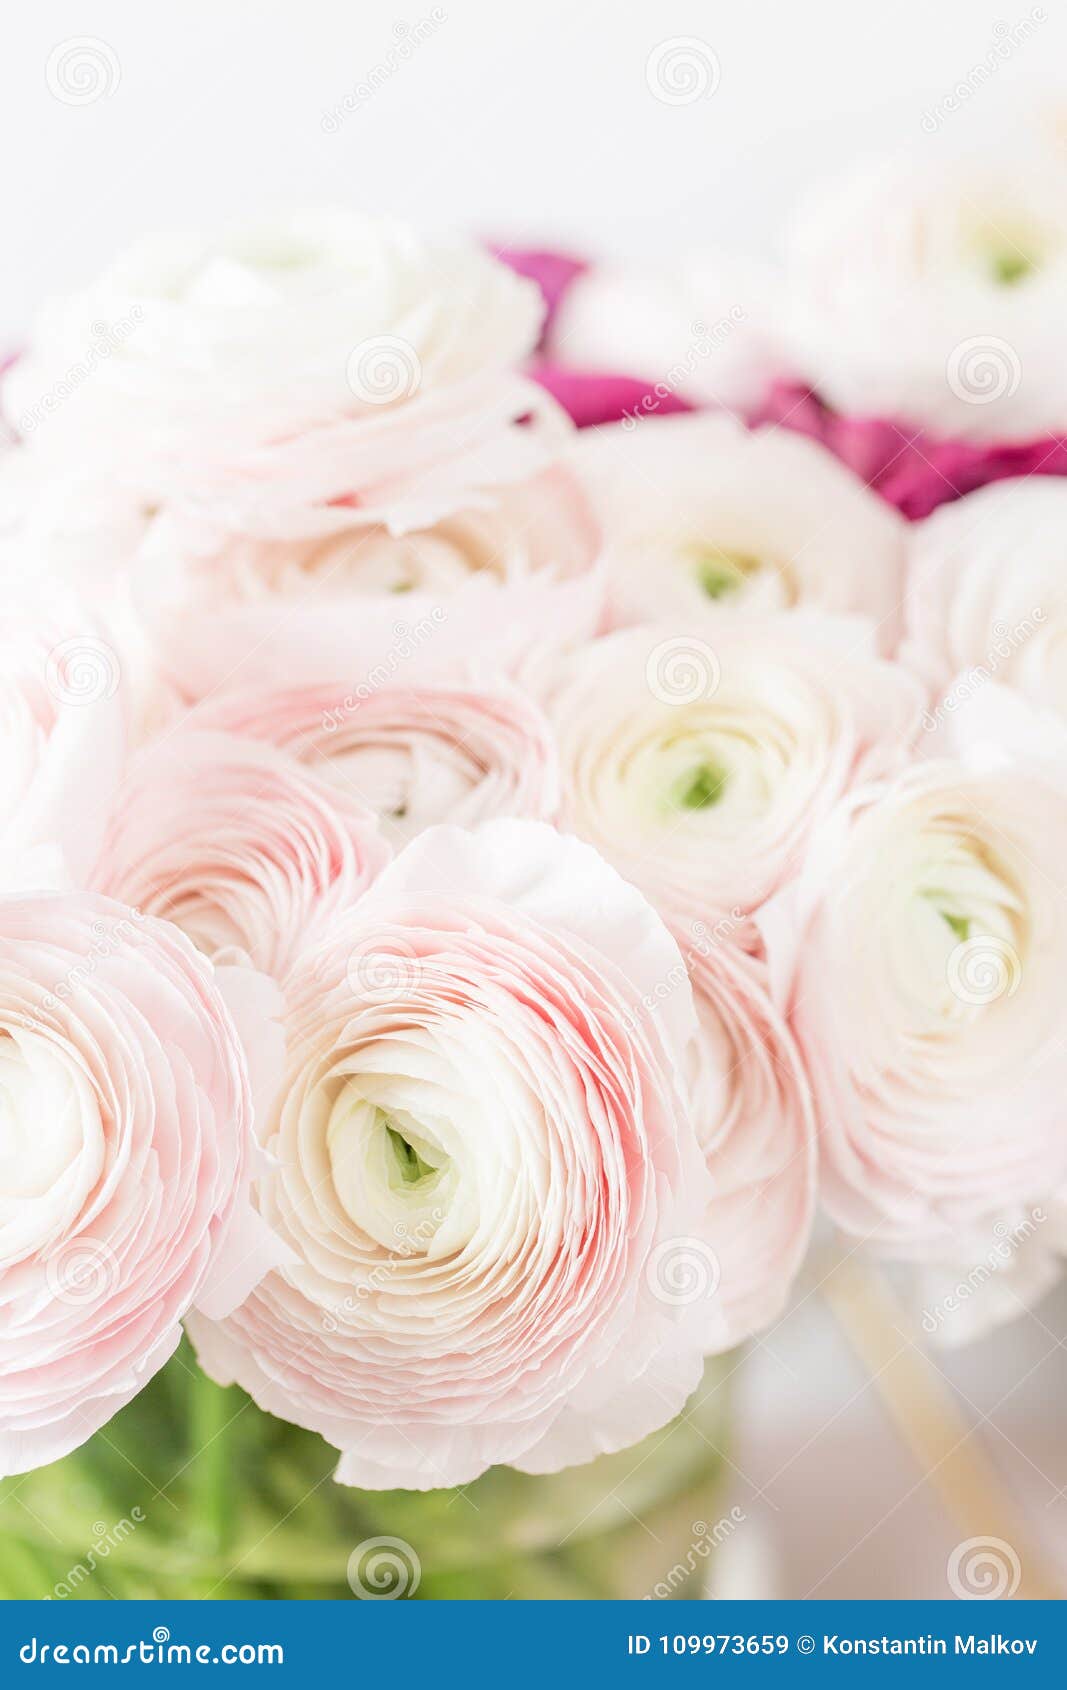 Renoncule Persane Groupe Pâle - Le Ranunculus Rose Fleurit Le Fond Clair  Vase En Verre Sur La Table En Bois De Vintage Rose Image stock - Image du  anniversaire, botanique: 109973659